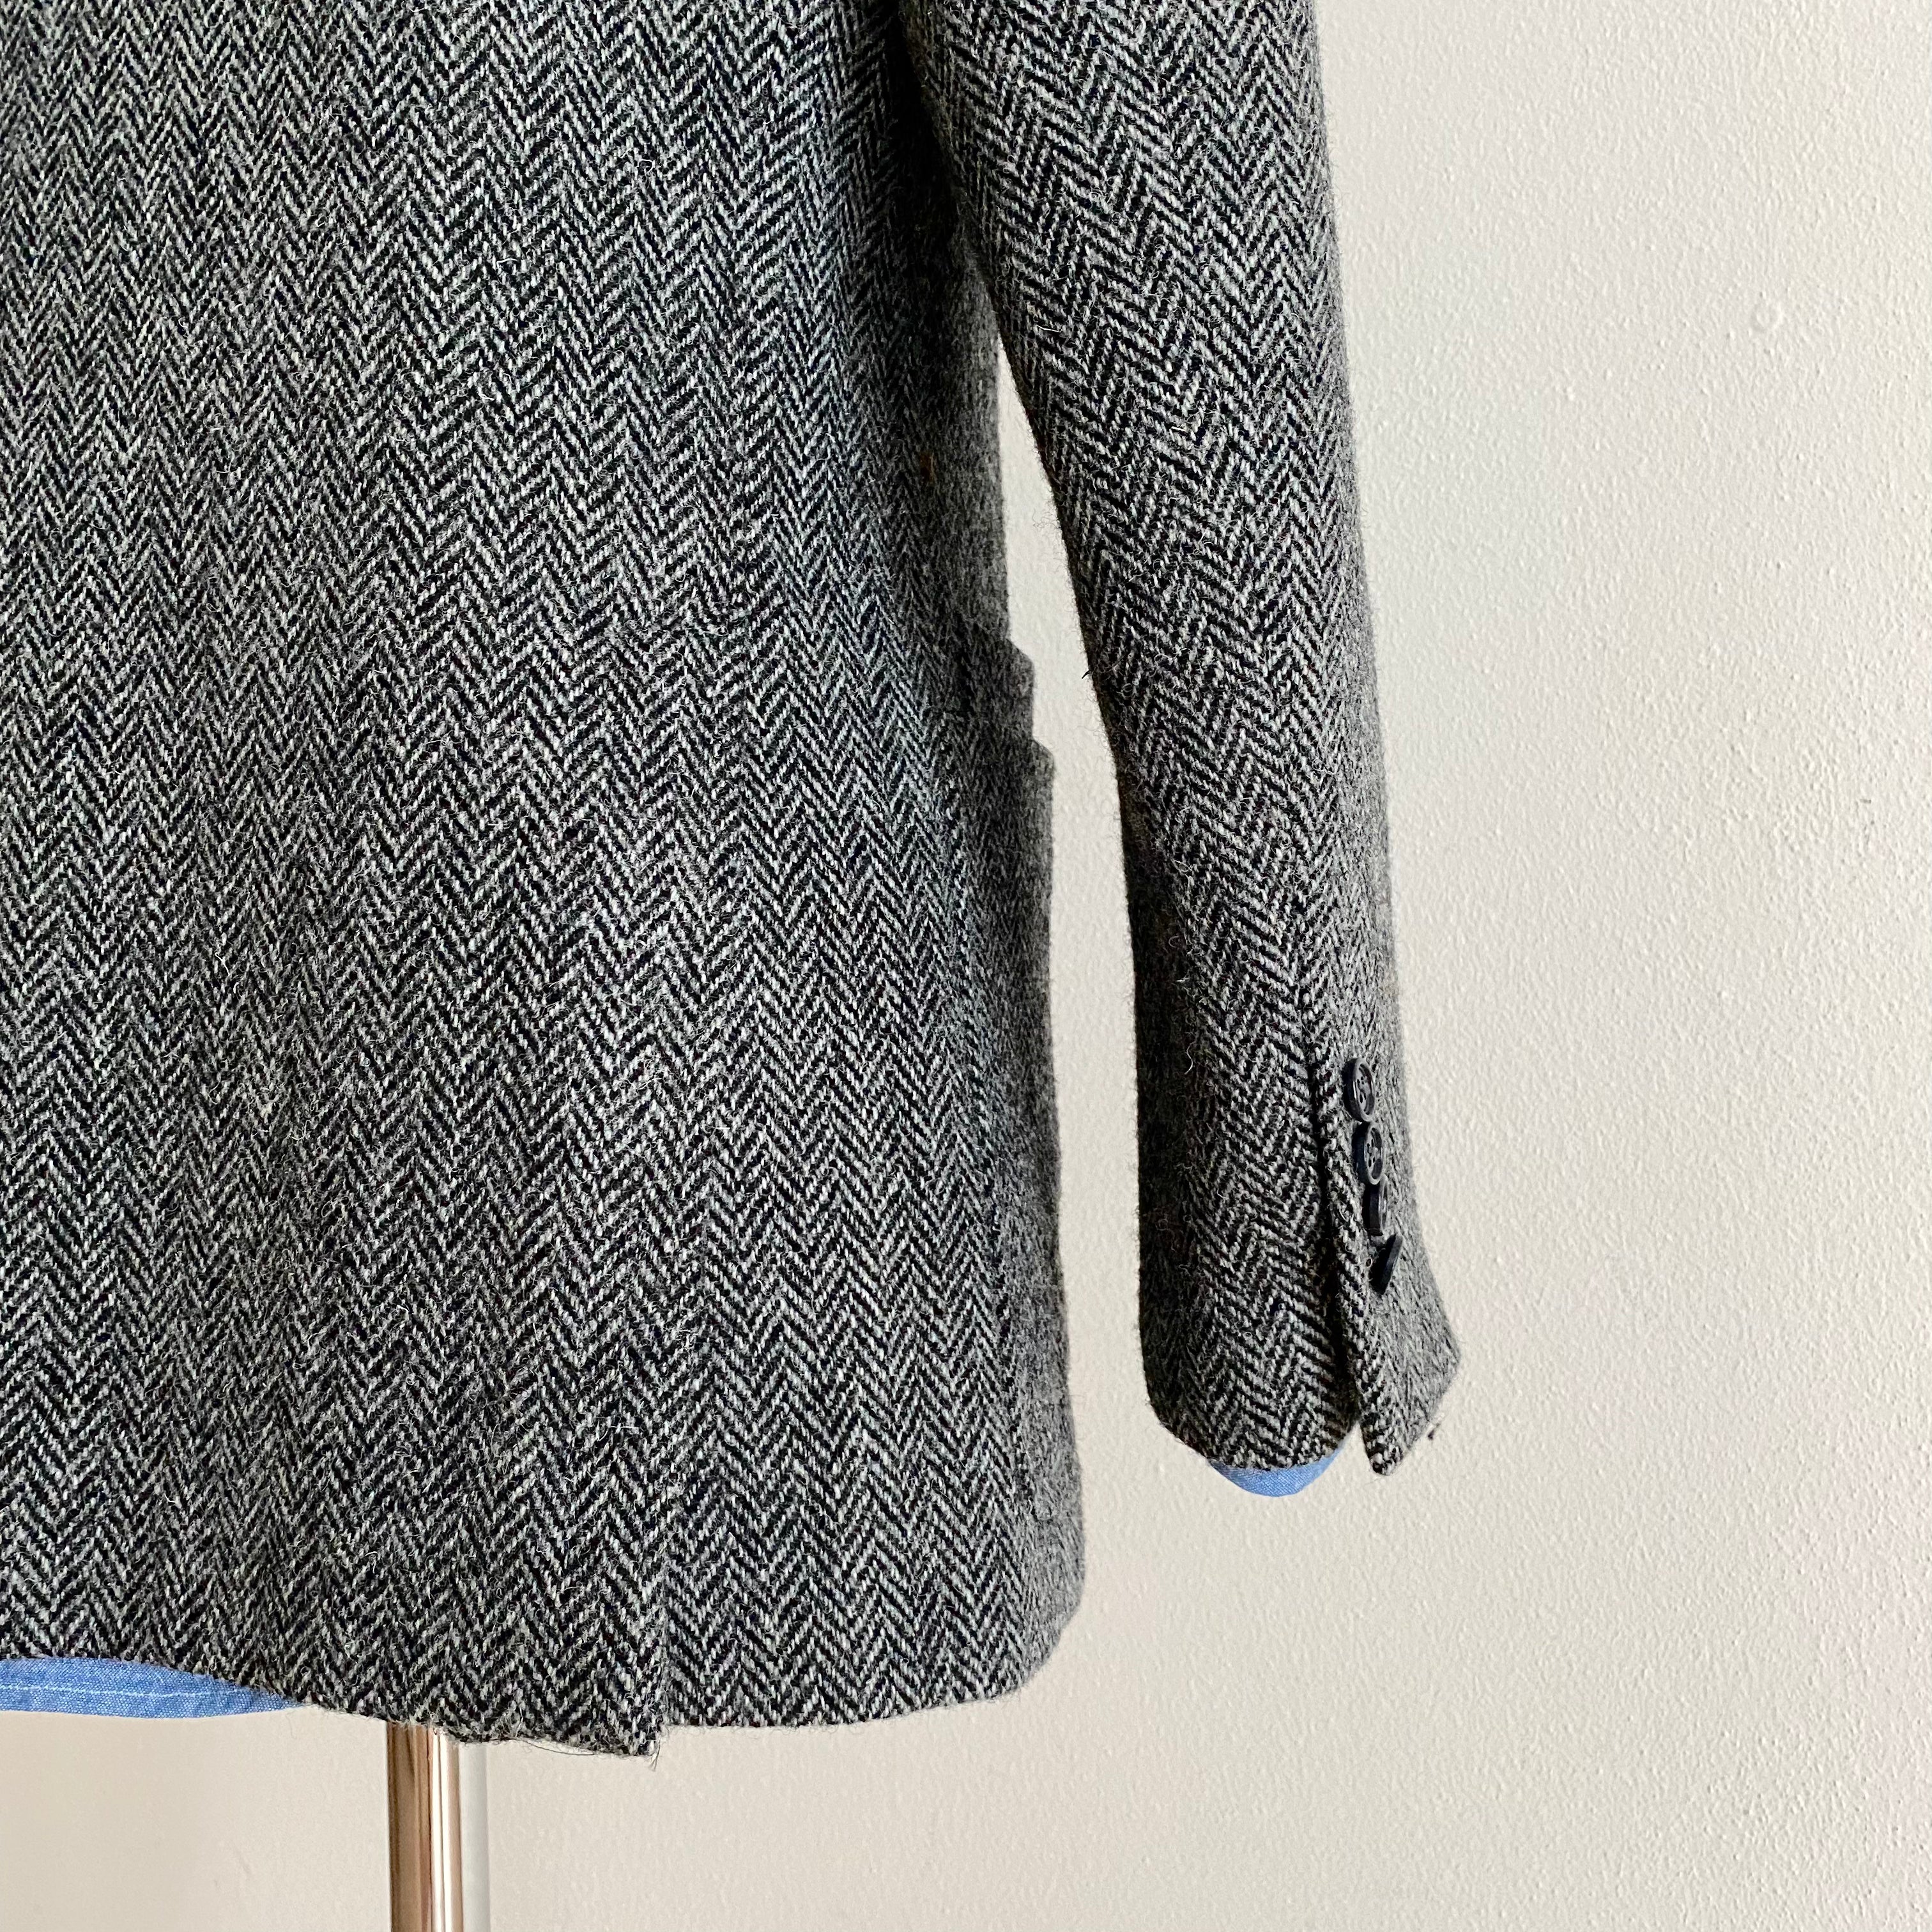 Grey Herringbone Tweed Tailored Jacket  - M/48R